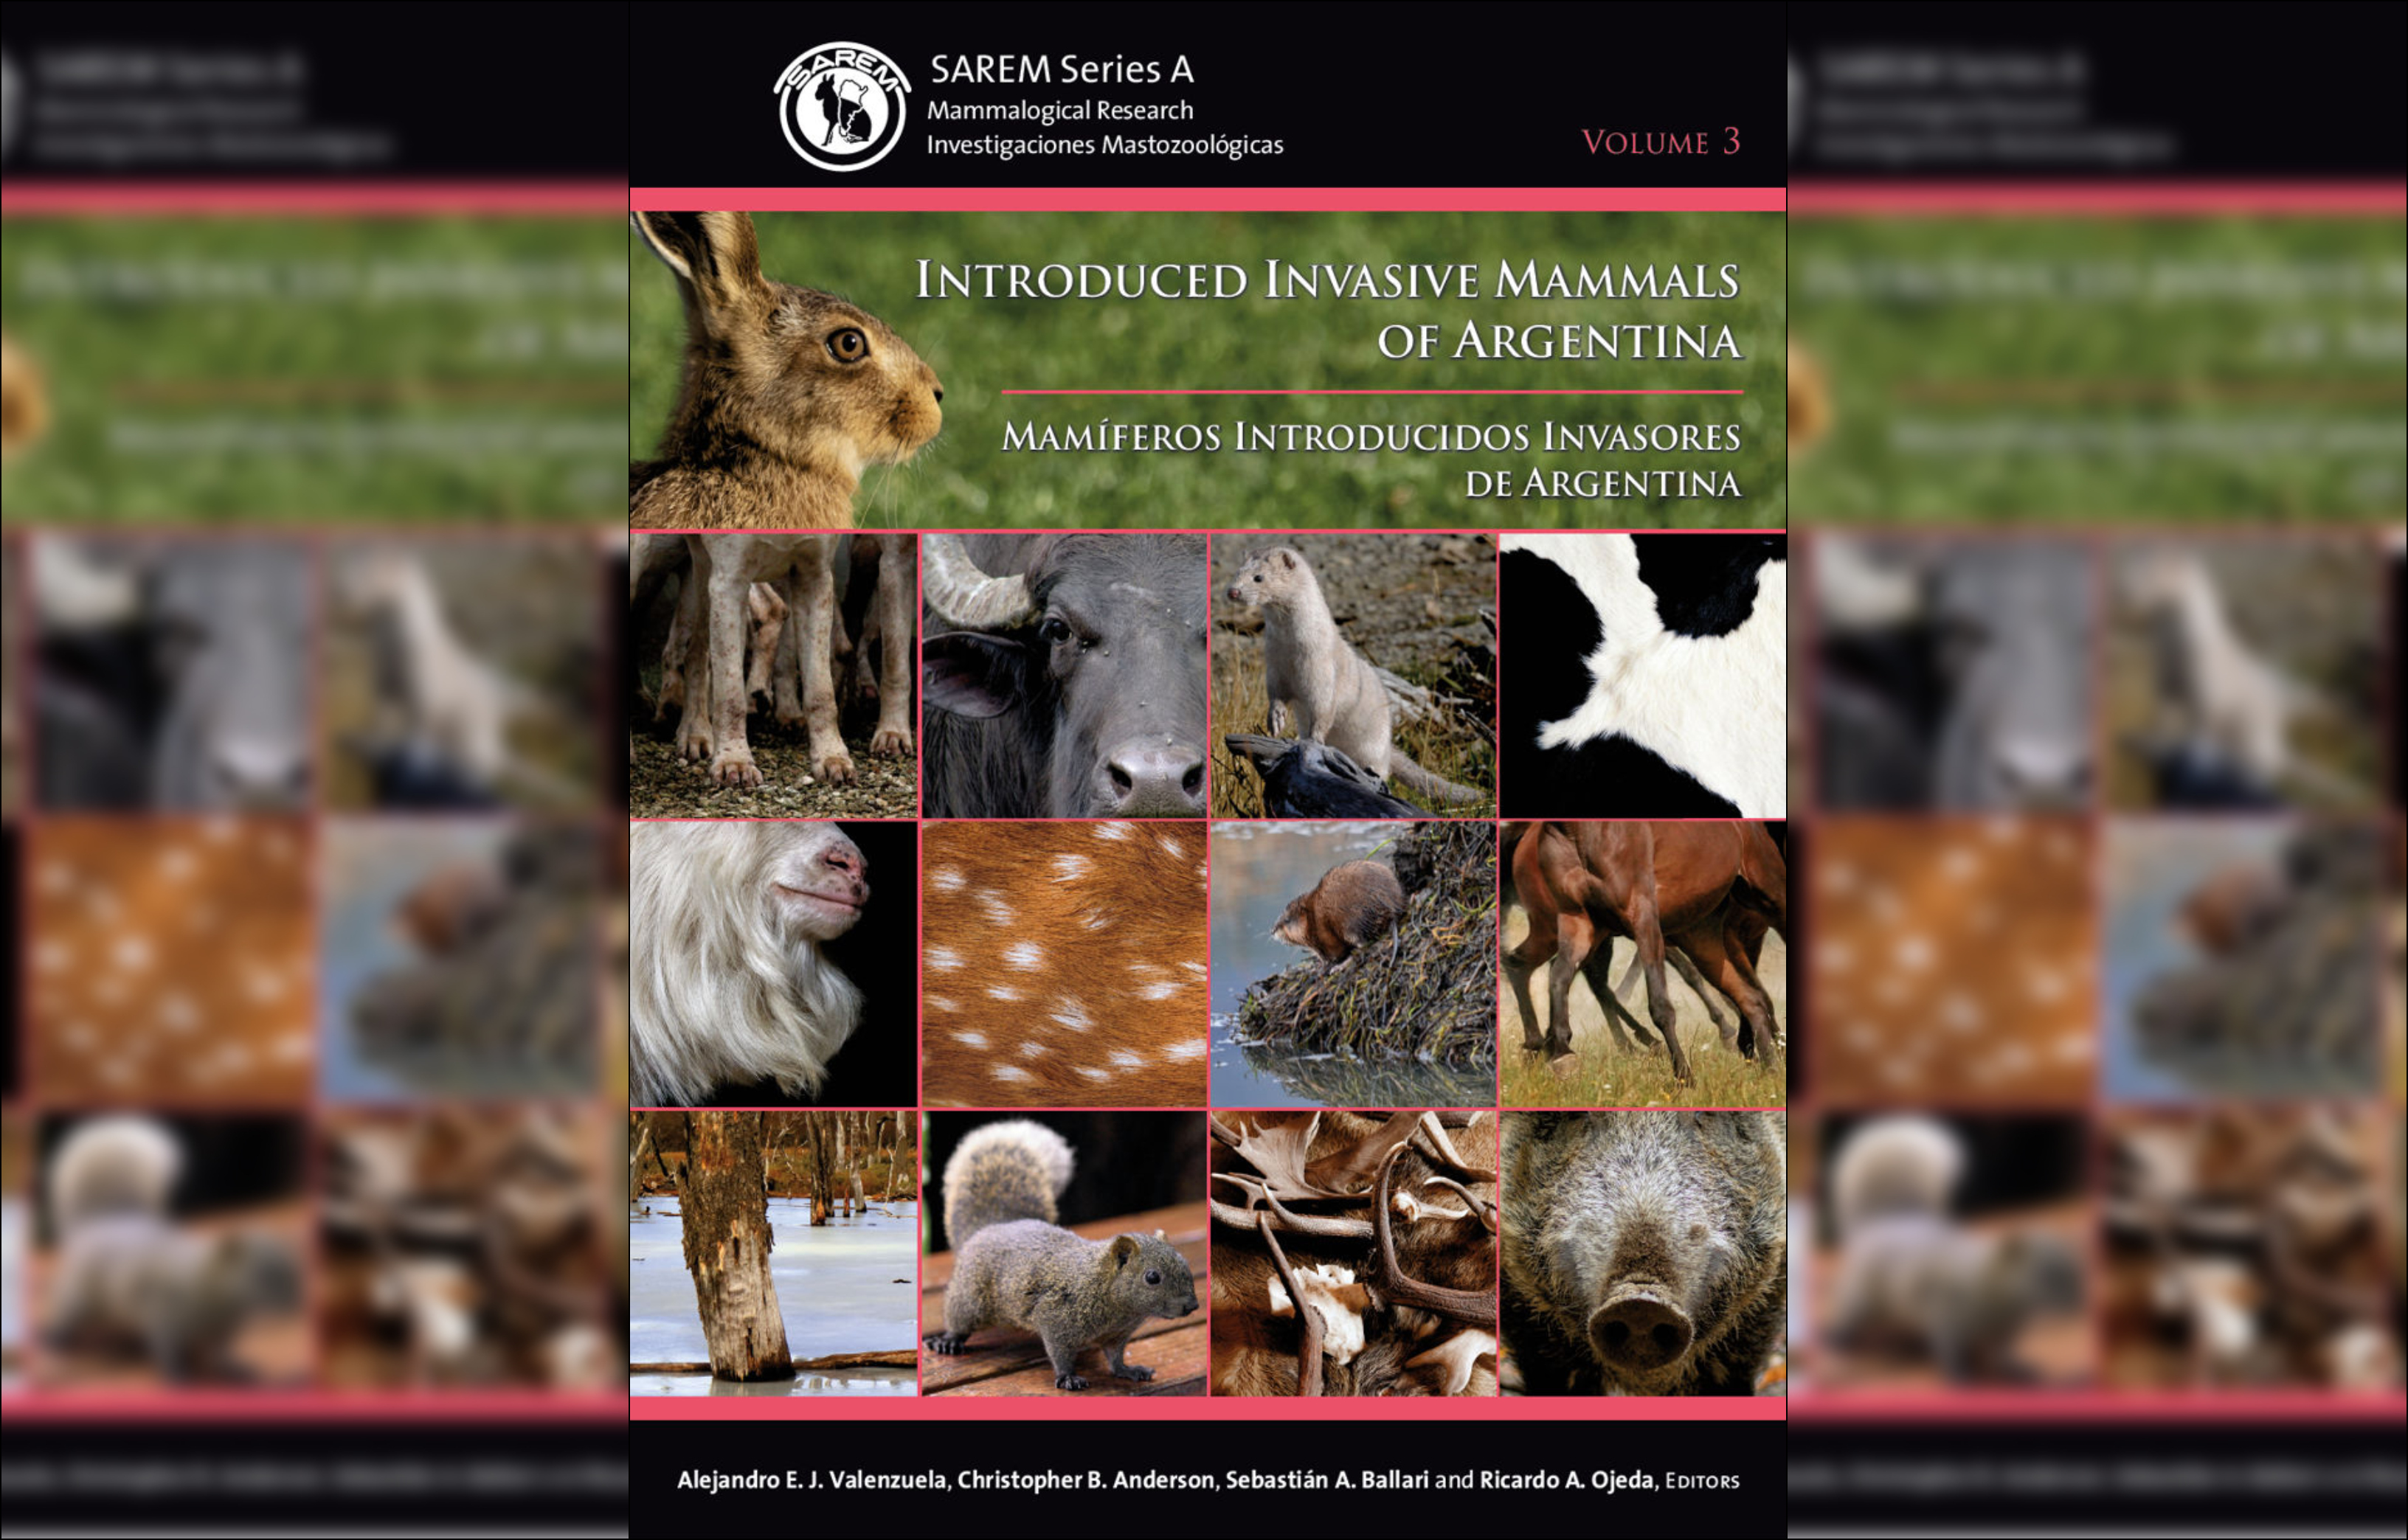 Publicaron el primer libro sobre los mamíferos introducidos invasores de la Argentina